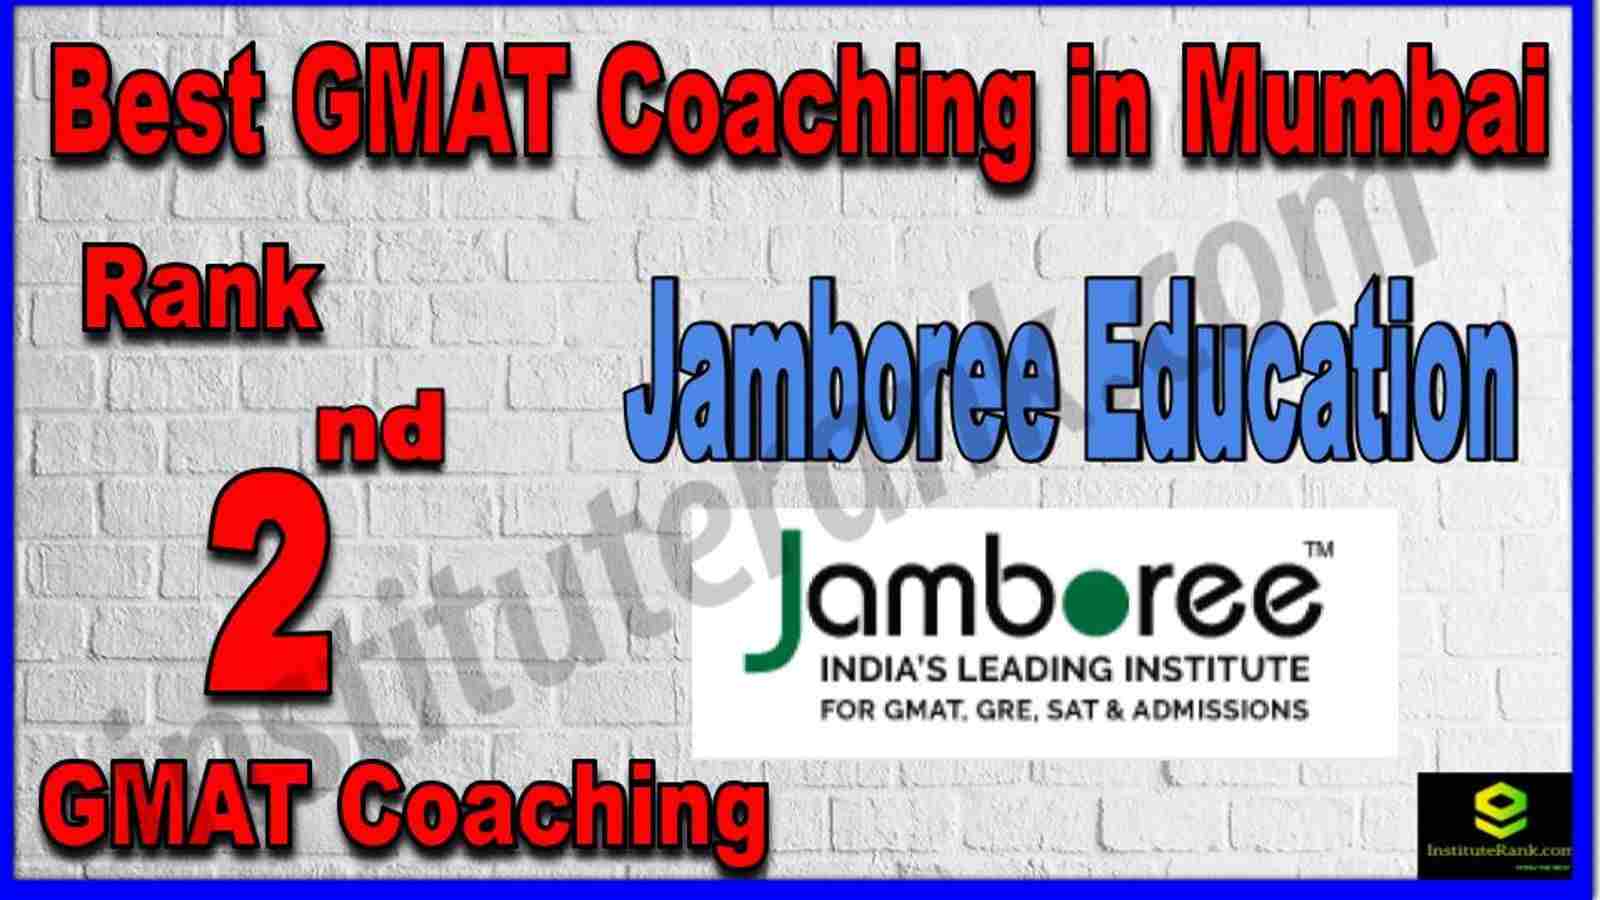 Rank 2nd Best GMAT Coaching in Mumbai